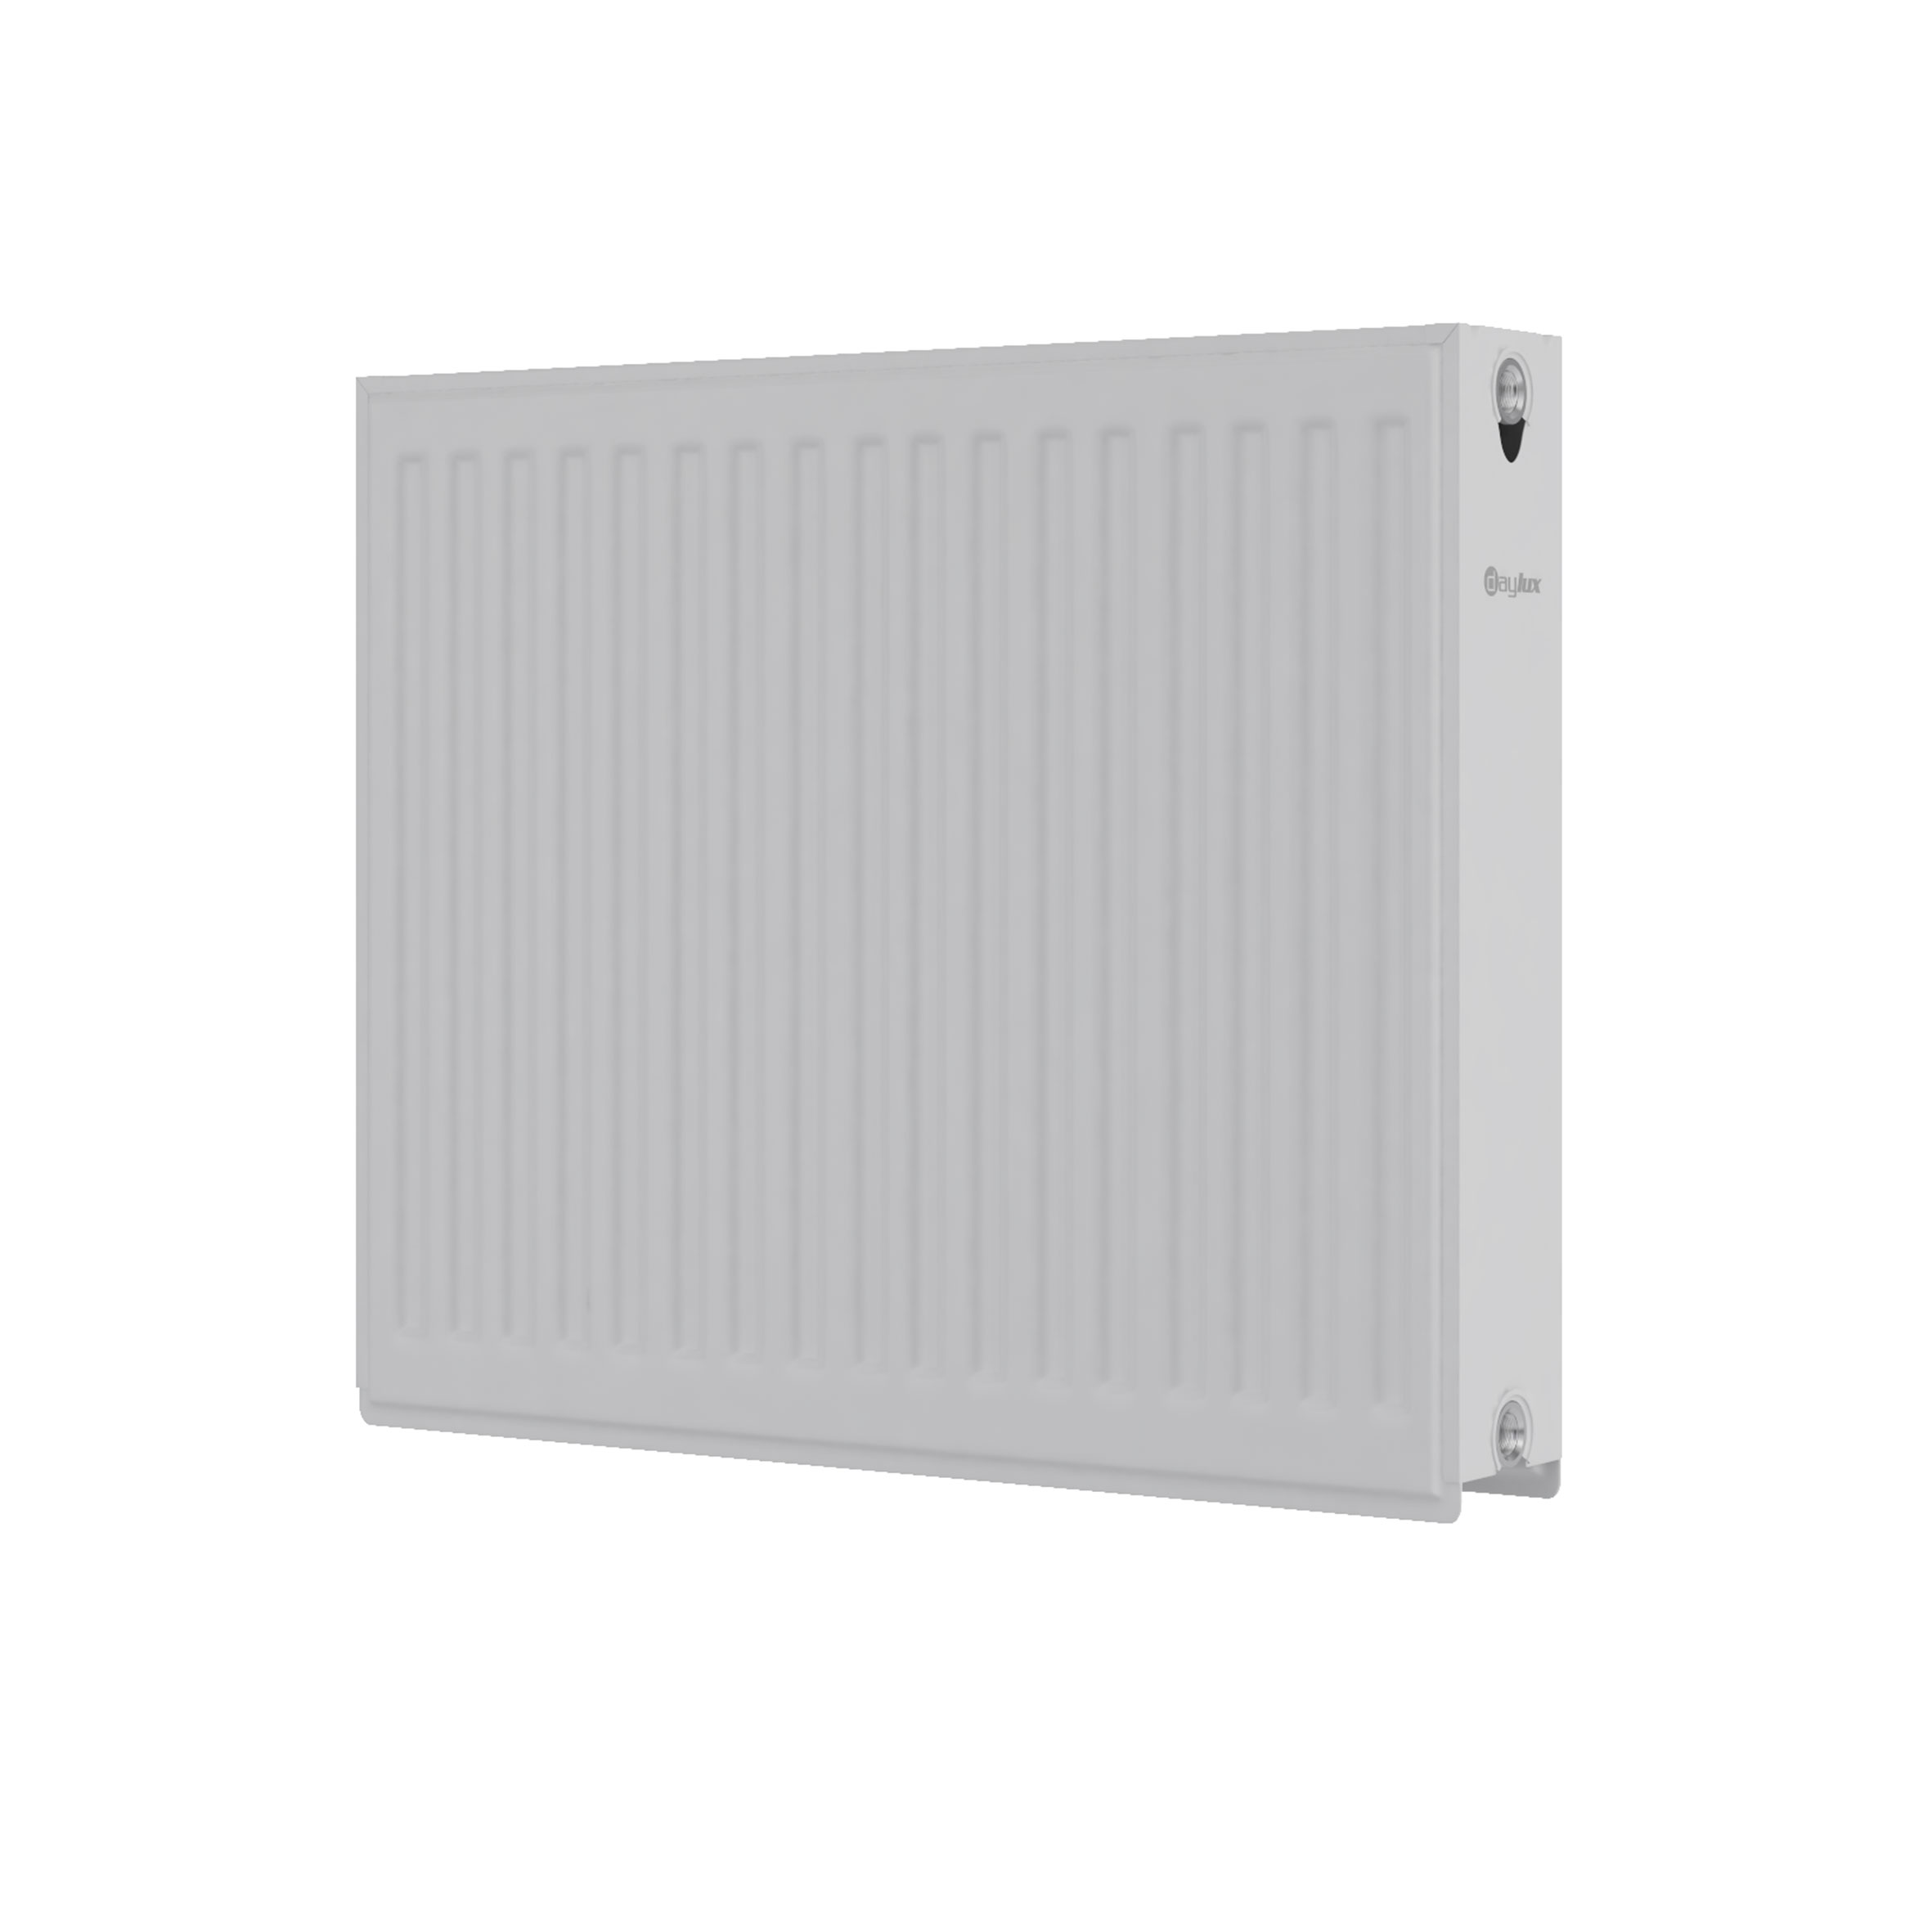 Радиатор для отопления Daylux 22 600x400 (боковое подключение) цена 1418.00 грн - фотография 2